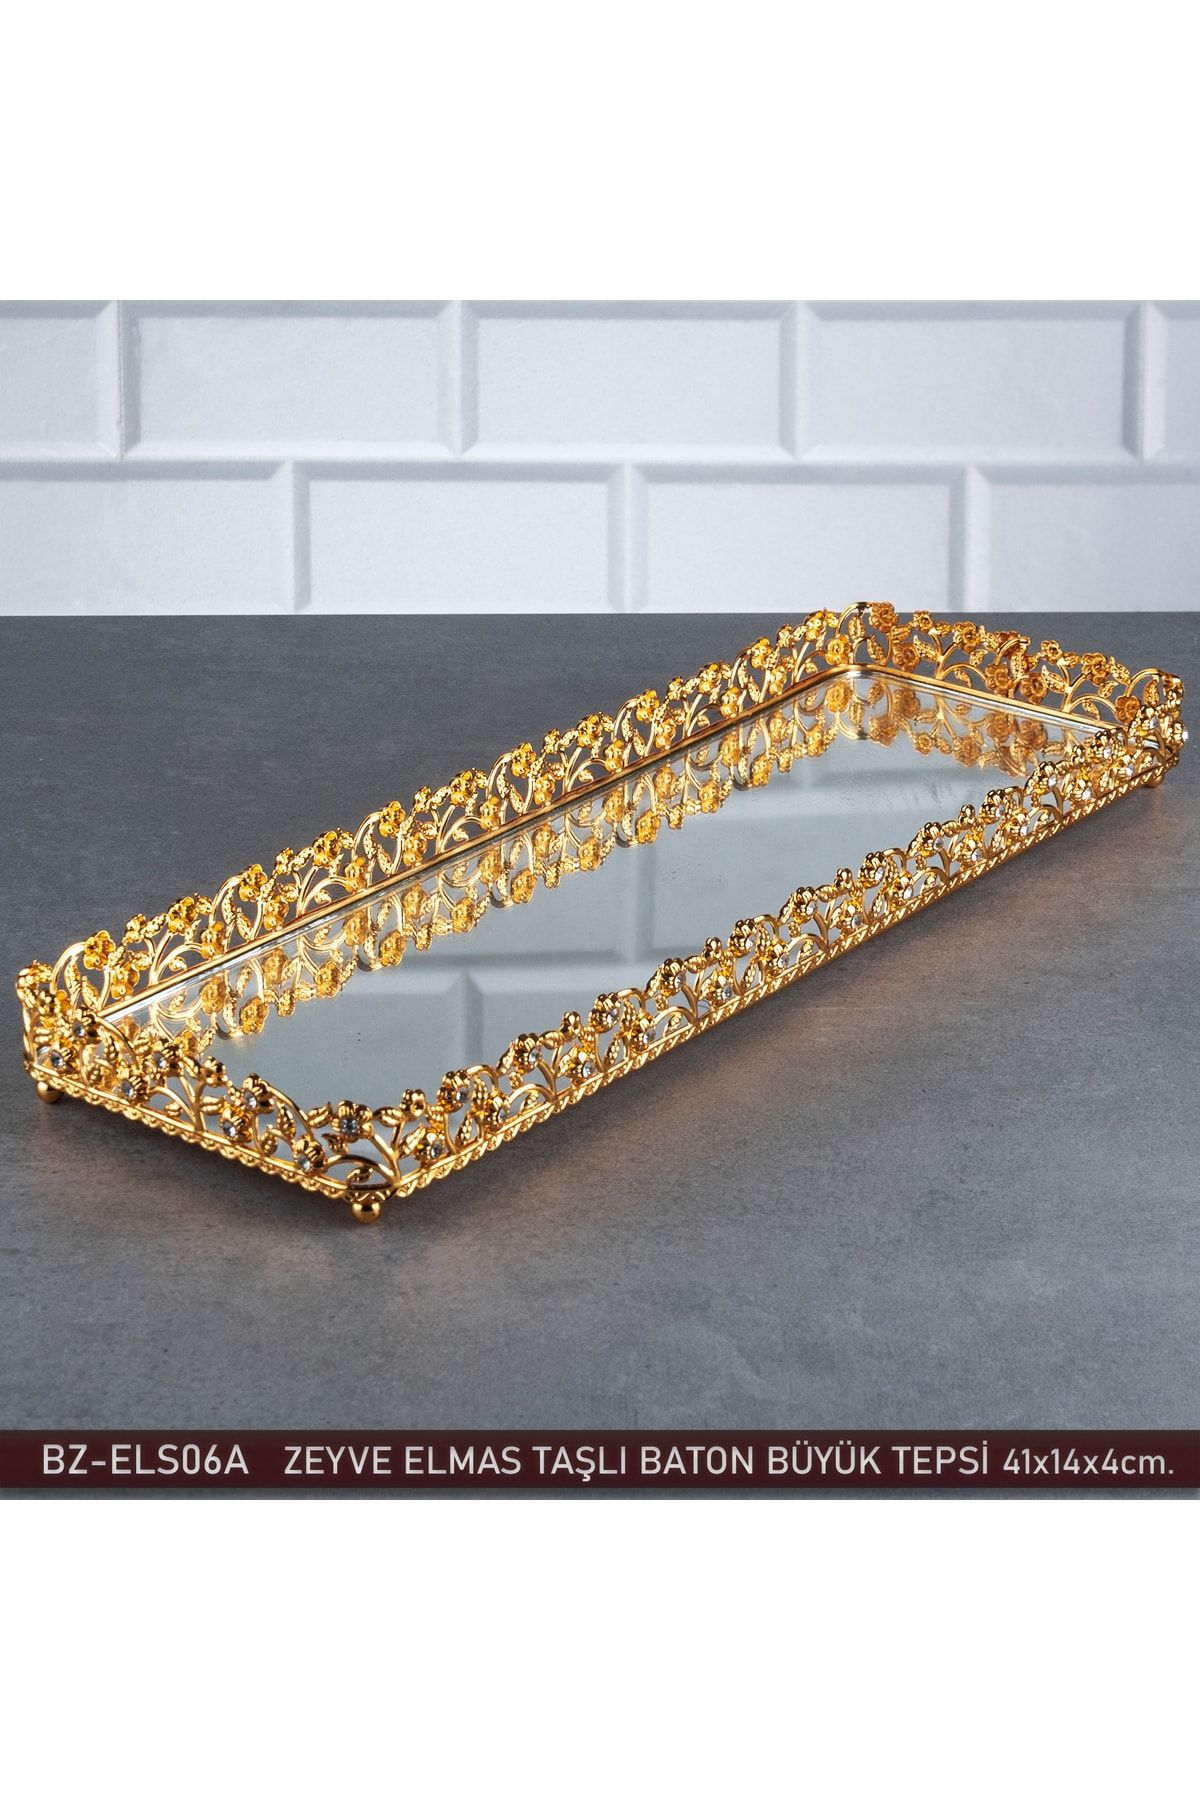 Zeyve Home Elmas Baton Kulpsuz Tepsi Aynalı Metal Jardinyer Çikolata Tepsisi Büyük Altın